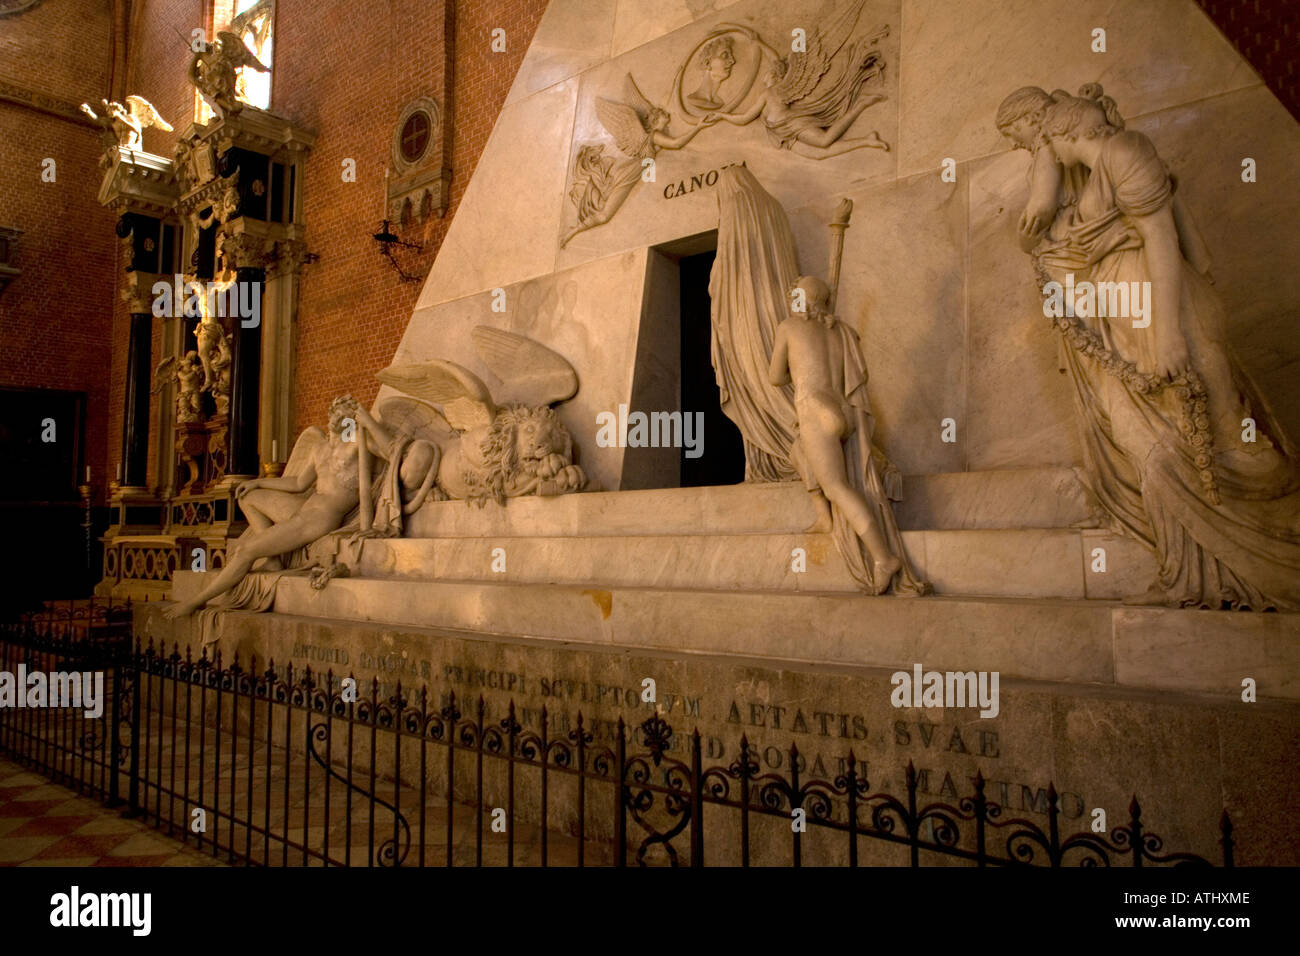 Le monument à Canova à Santa Maria Gloriosa dei Frari Venise Italie Banque D'Images